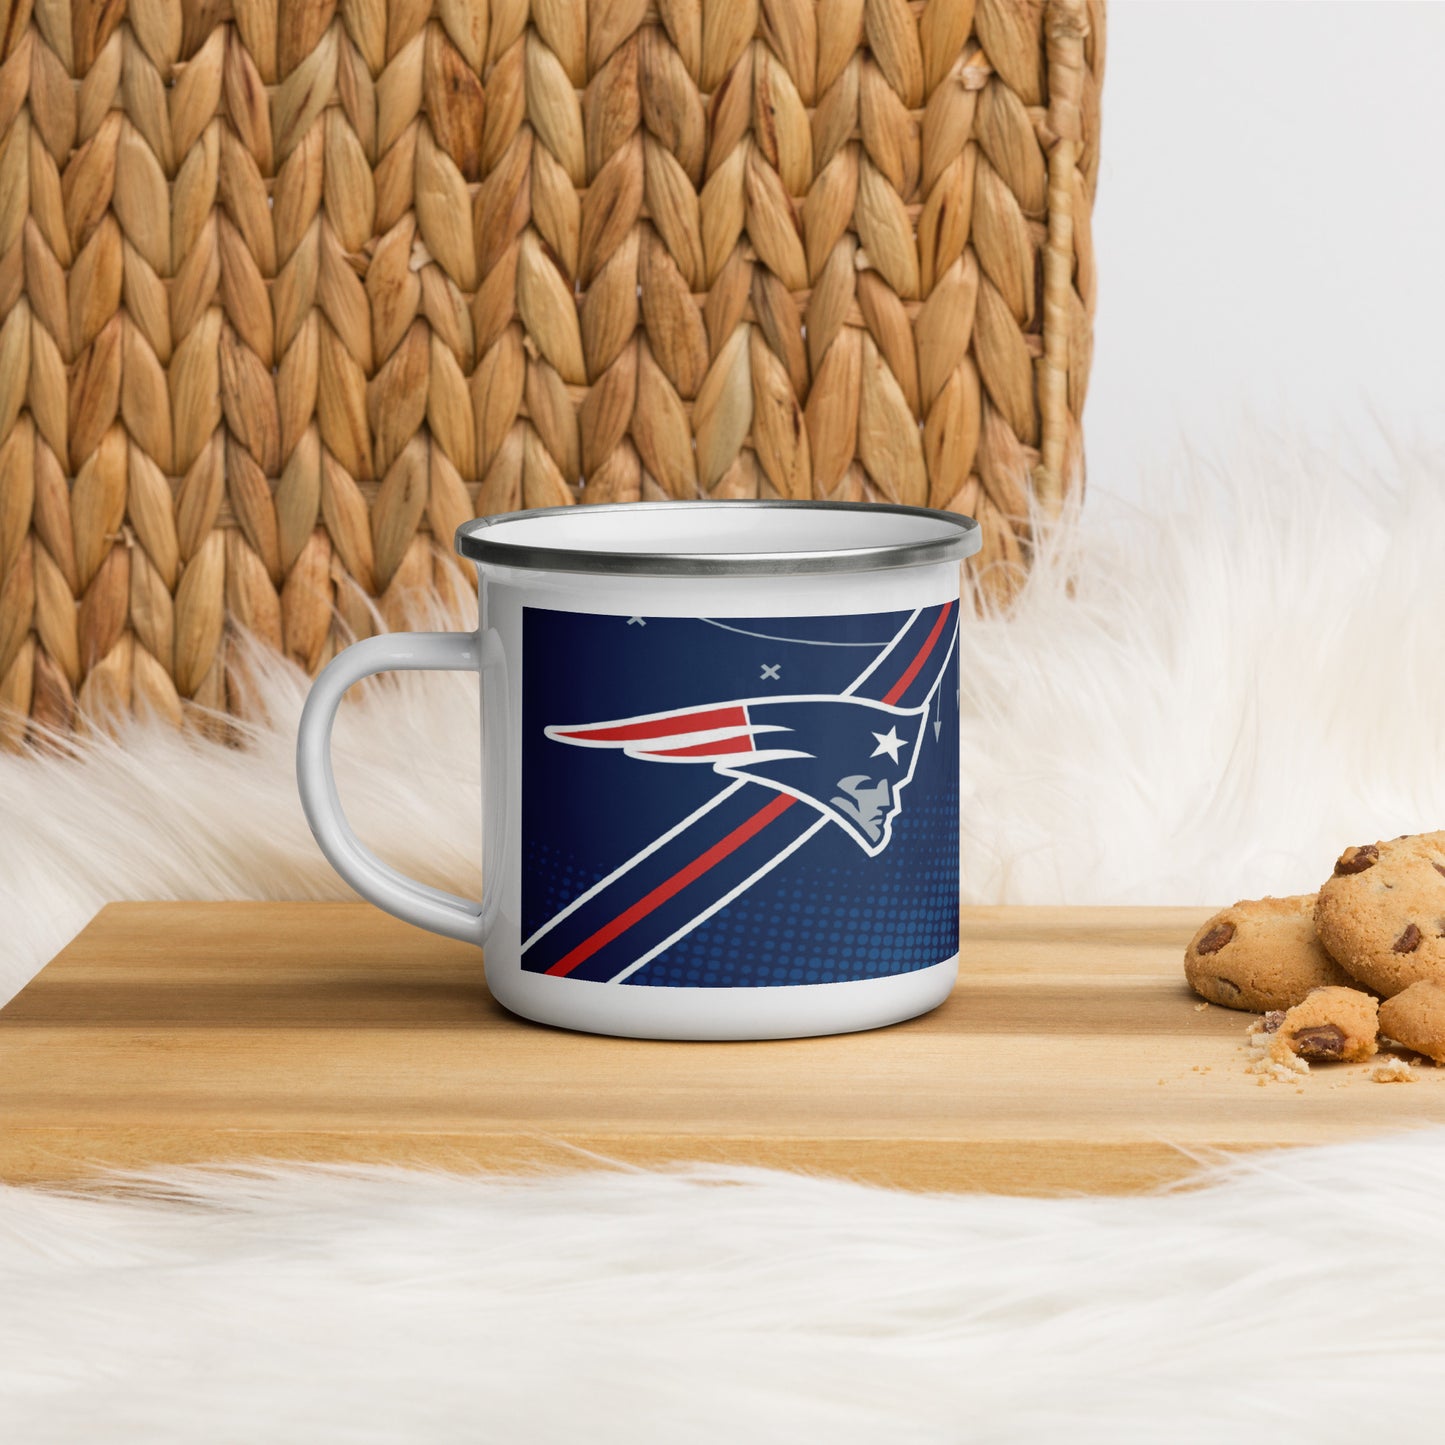 NFL Patriots Mug